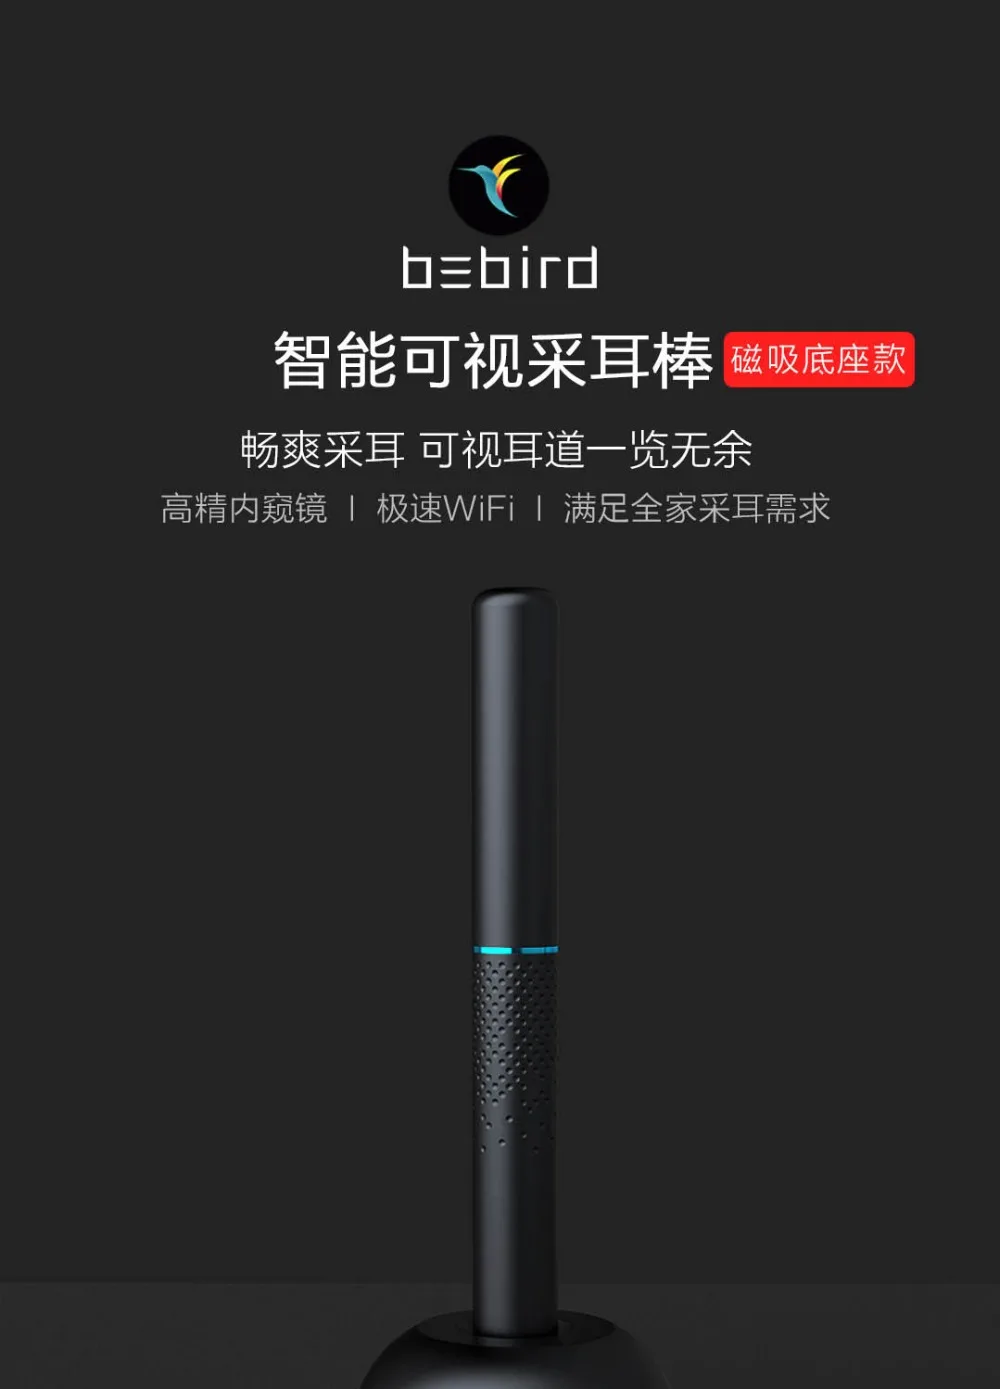 Xiaomi Youpin bebird M9 Pro умная визуальная Ушная палка 17в1 300 Вт Высокоточный эндоскоп 350 мАч с магнитно заряженной базой